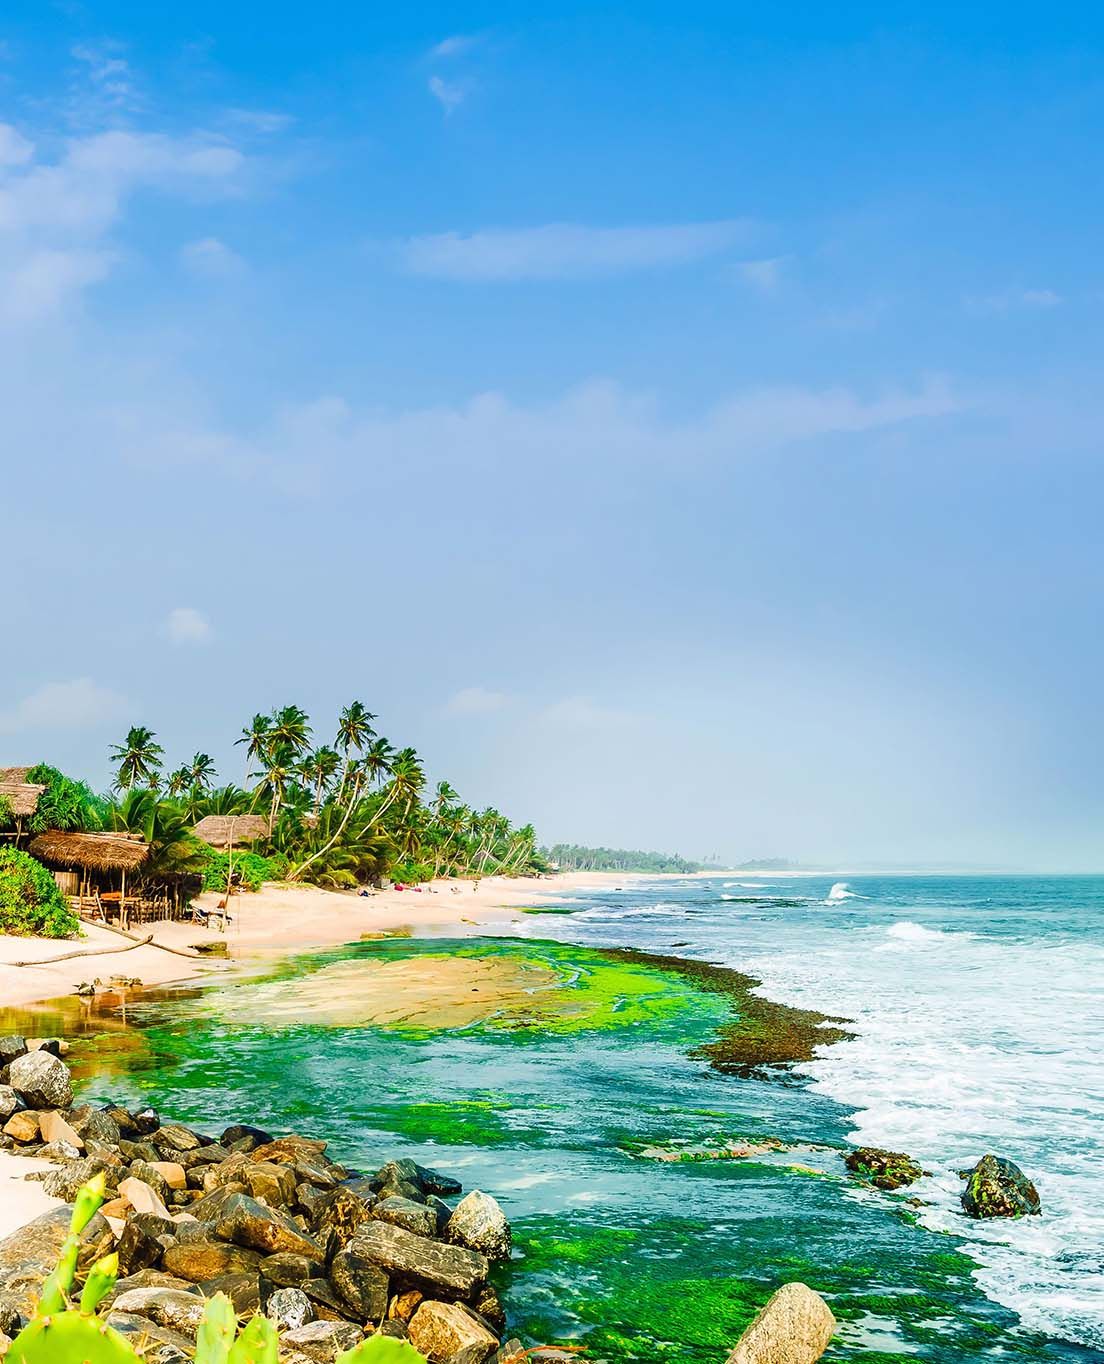 Sri Lanka at a glance